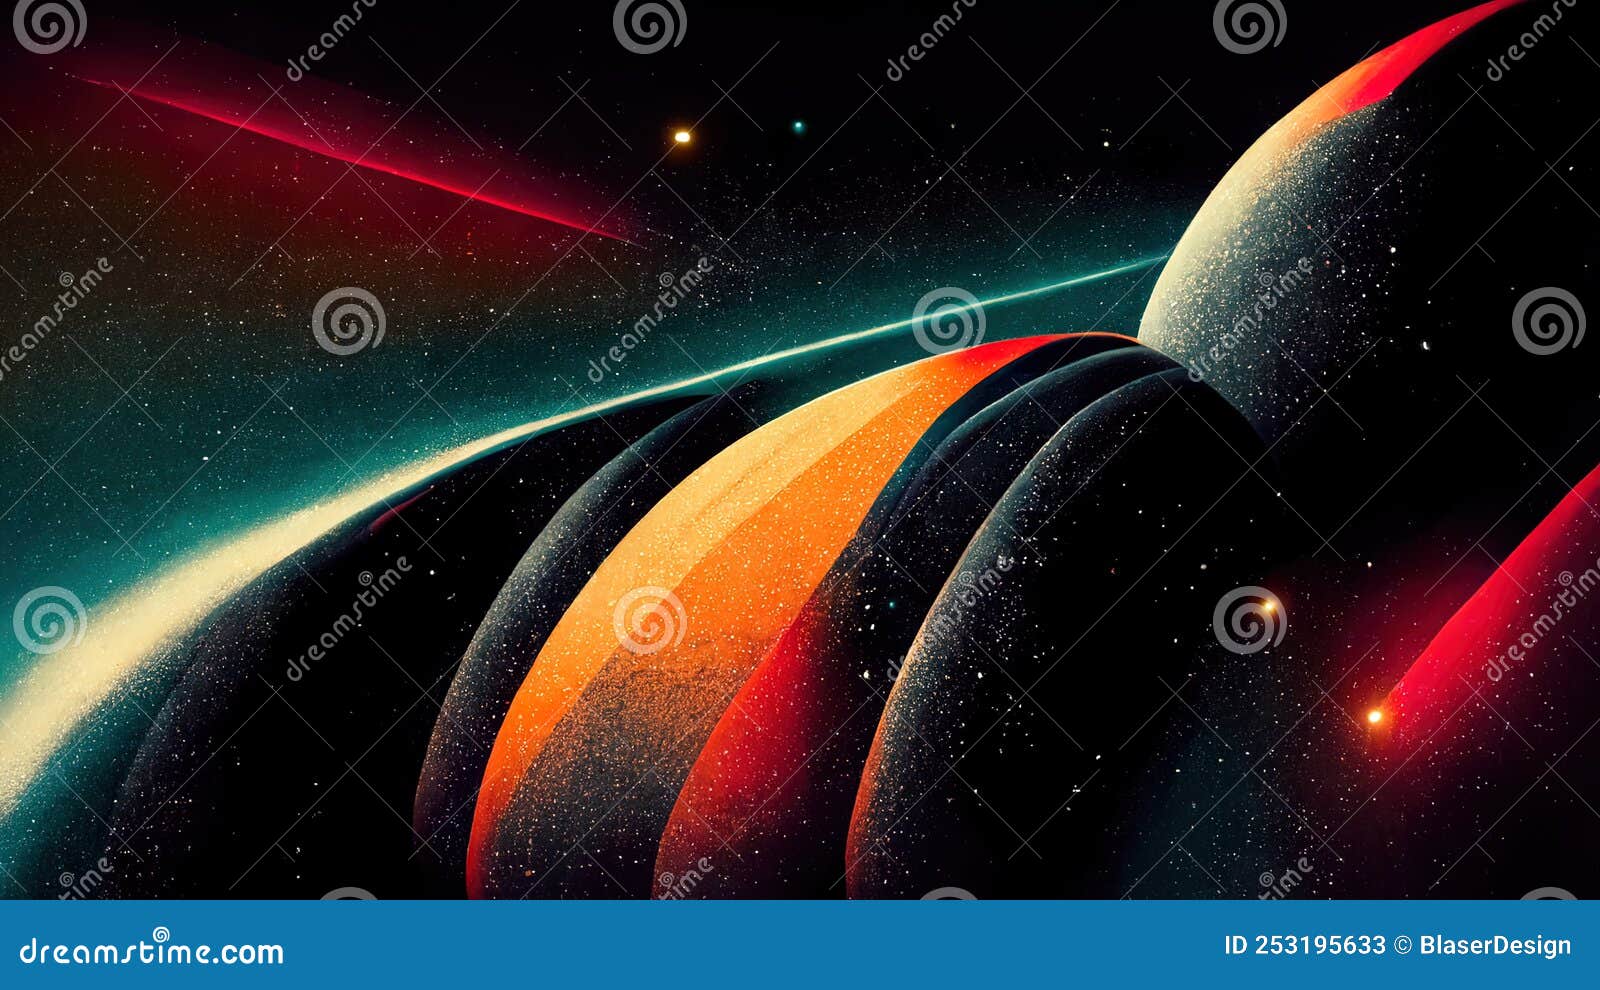 Hình nền vũ trụ retro Futuristic, phong cách vintage đầy sắc màu là điều tuyệt vời nhất mà bạn có thể tìm thấy để trang trí máy tính của mình. Xem ngay hình ảnh liên quan để khám phá sự kết hợp ấn tượng giữa phong cách cổ điển và vũ trụ.